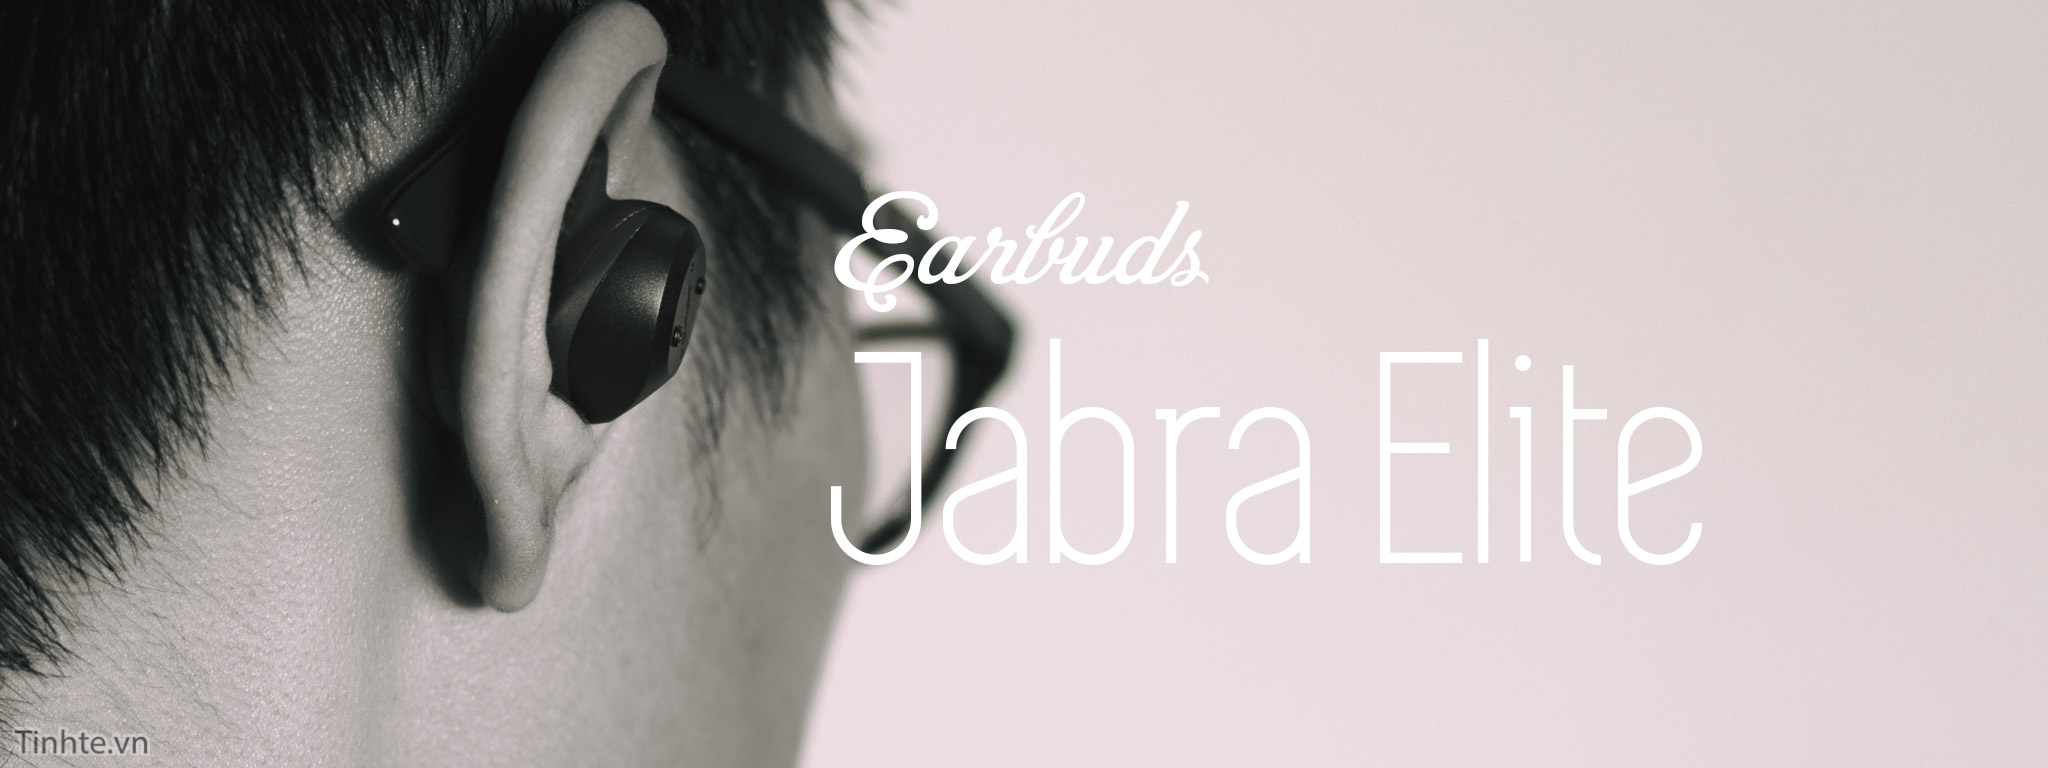 Trên tay tai nghe không dây Jabra Elite Sport: hoàn thiện tốt, đeo rất chắc, nhiều tính năng